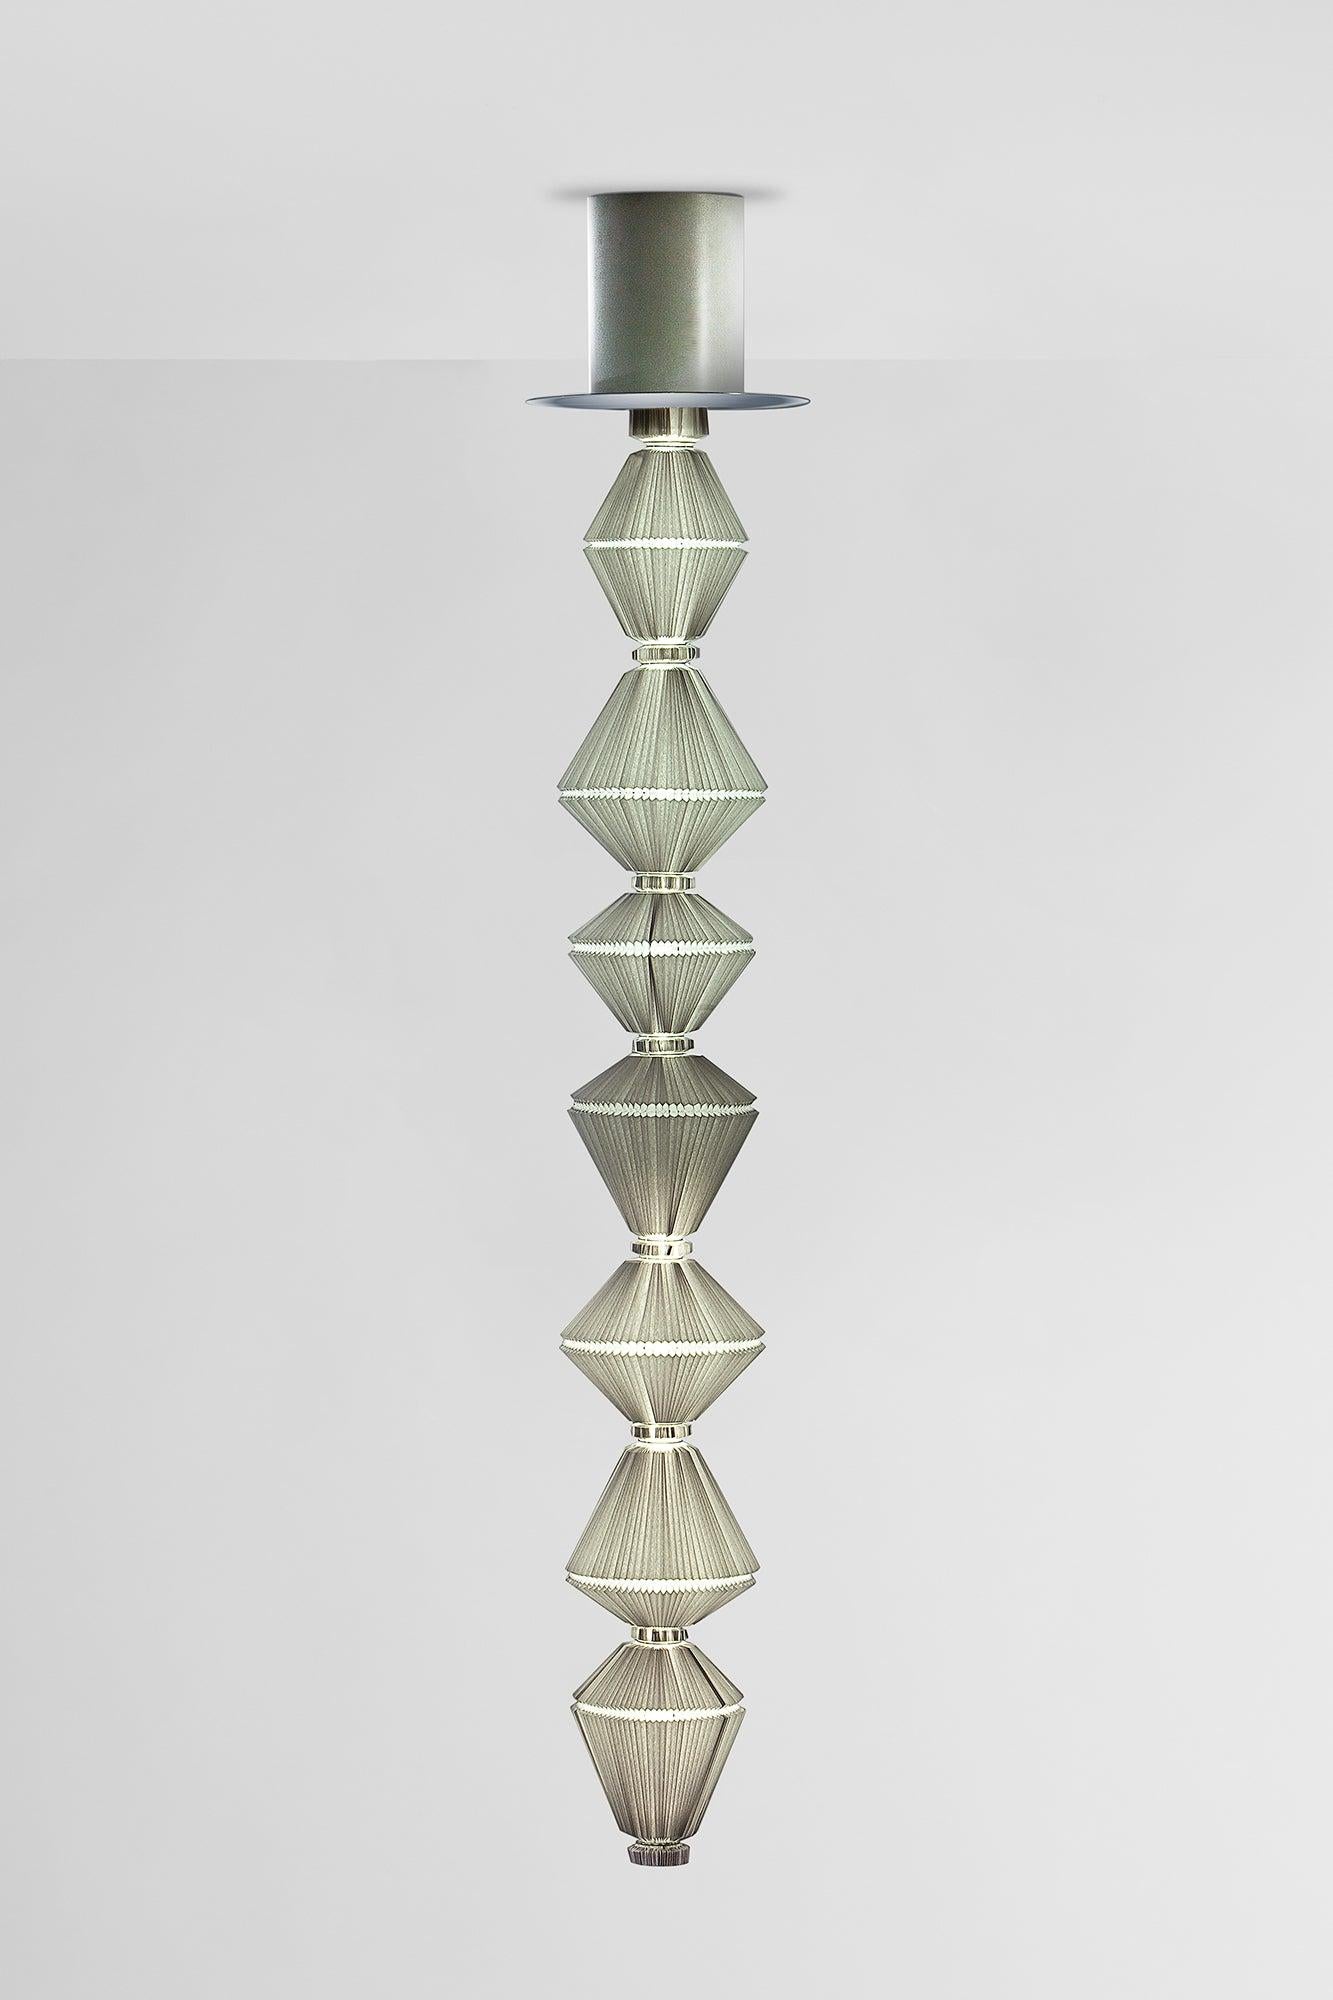 Suspension Oiphorique T GR conçue par l'Atelier Oi en 2014.
Fabriqué par Parachilna (Espagne)

Oïphorique présente un élégant diffuseur textile. Après avoir allumé la lumière, vous réveillez l'âme, qui se met à bouger dans un mouvement